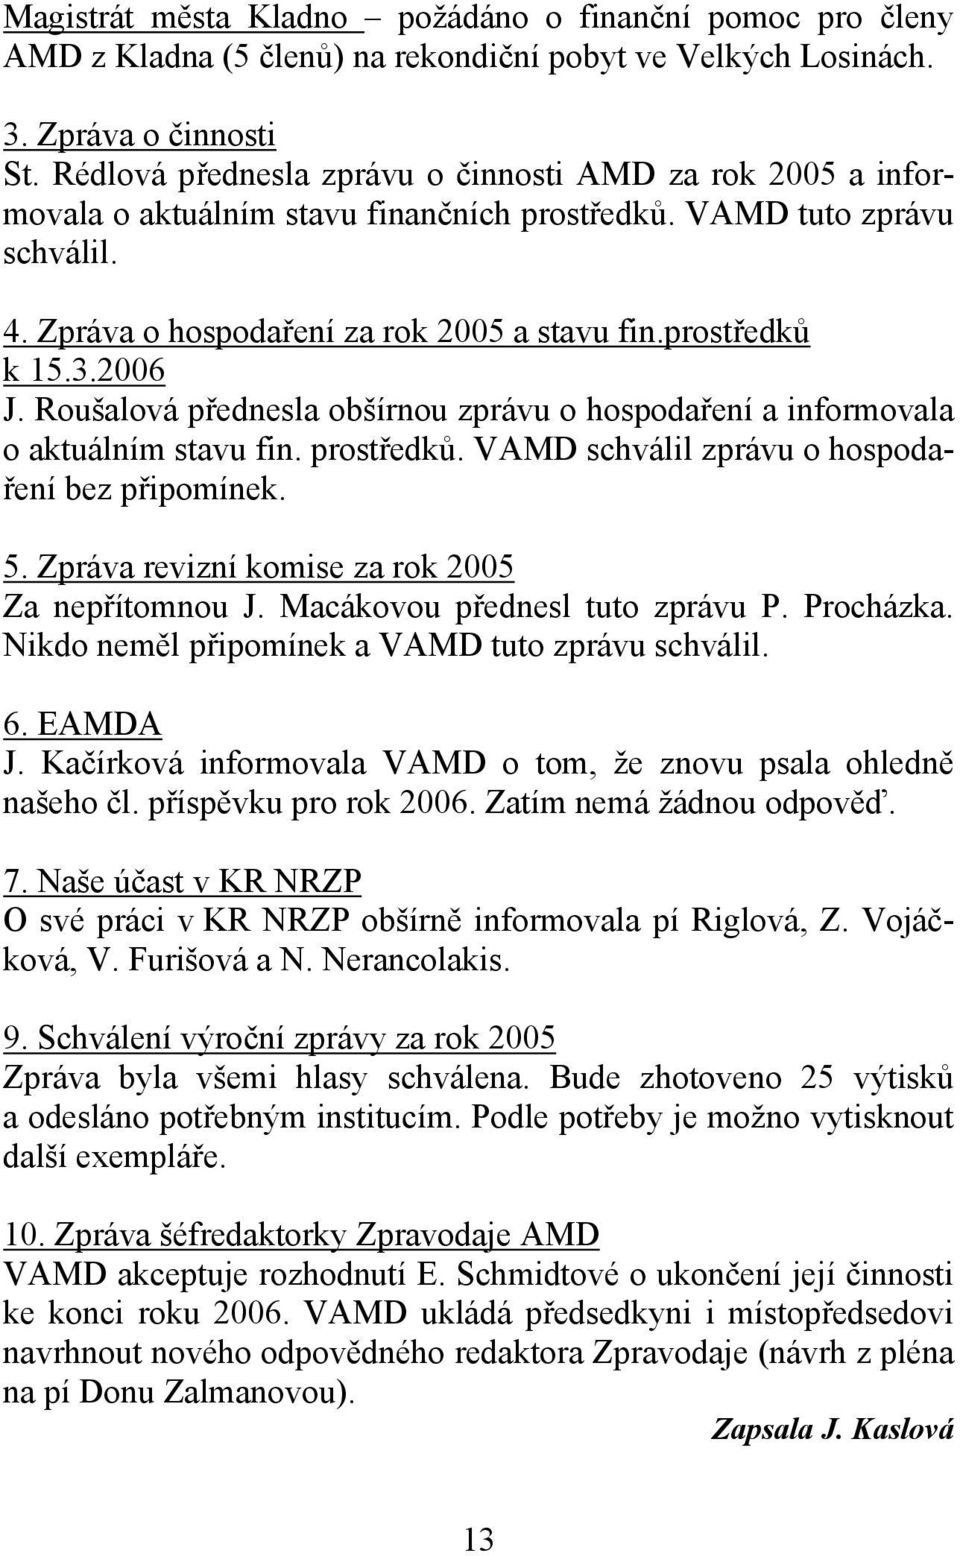 2006 J. Roušalová přednesla obšírnou zprávu o hospodaření a informovala o aktuálním stavu fin. prostředků. VAMD schválil zprávu o hospodaření bez připomínek. 5.